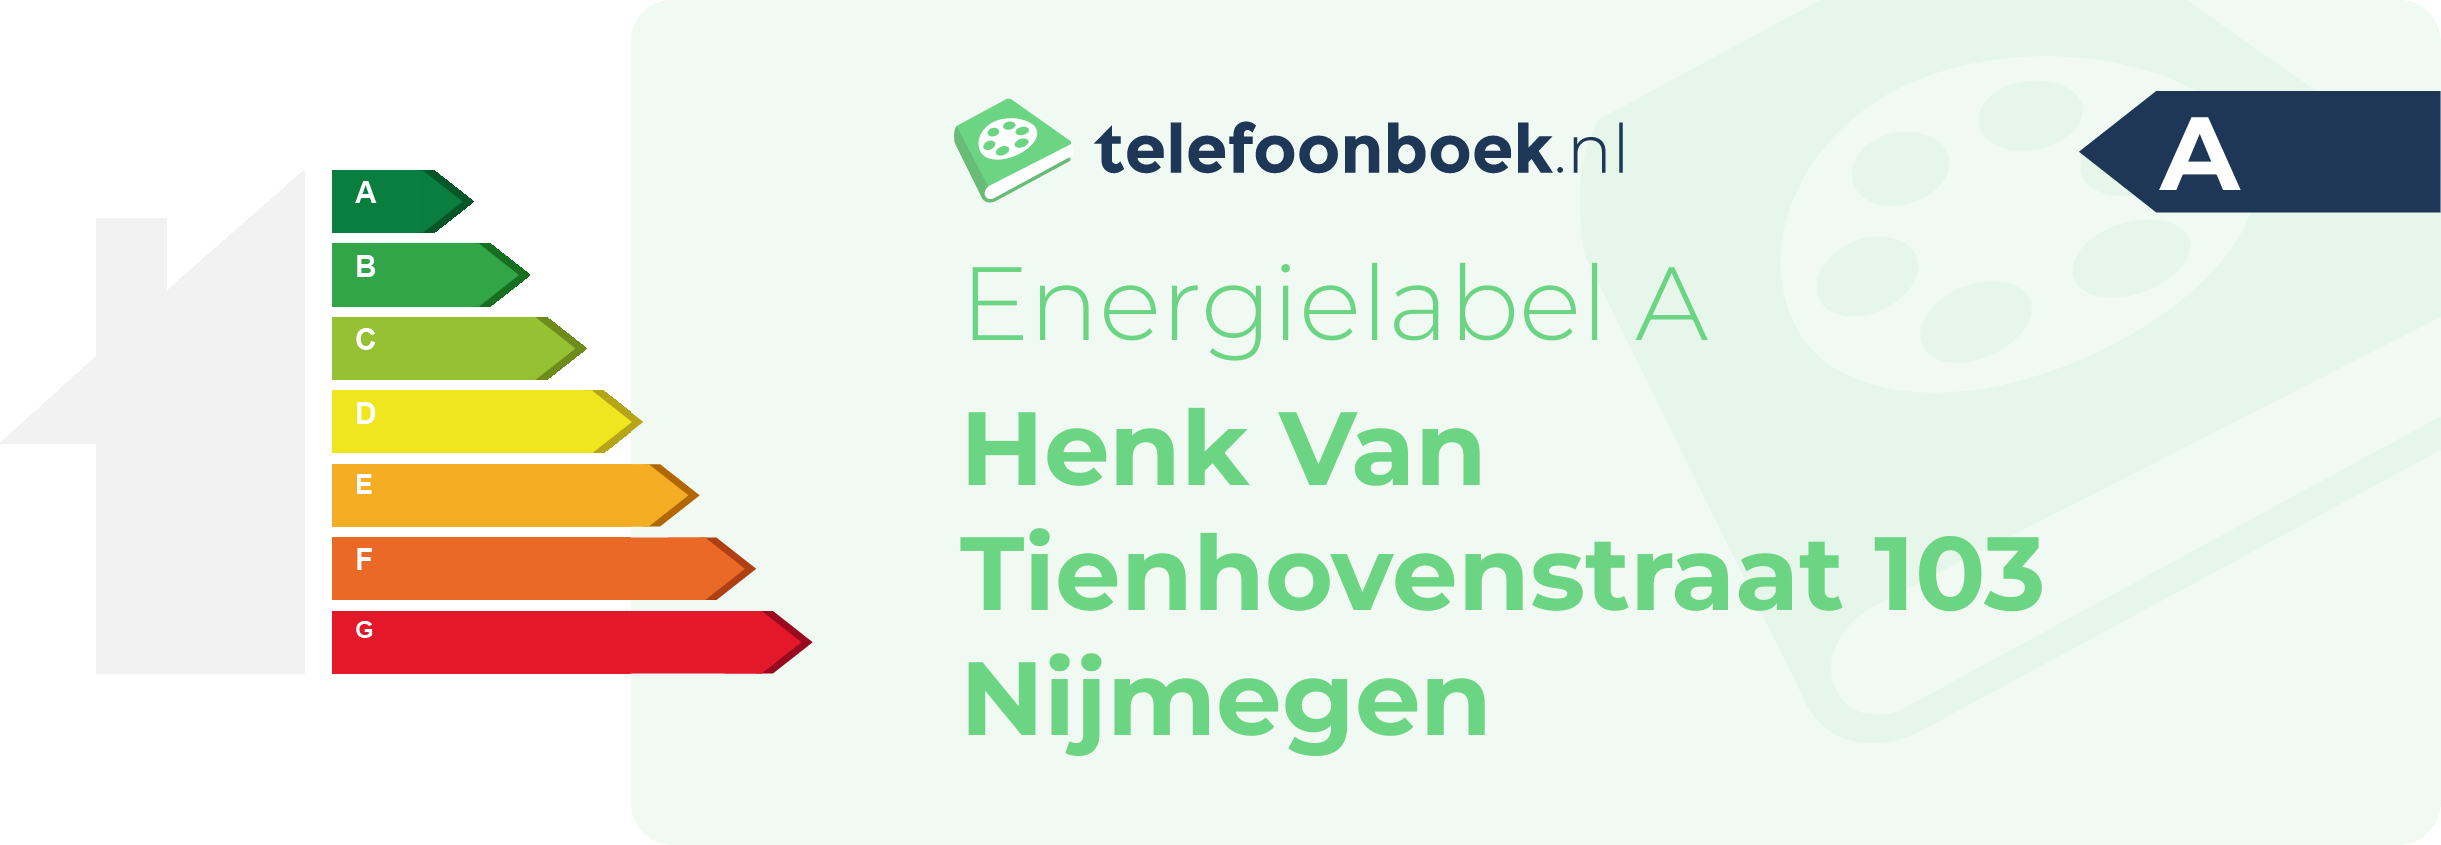 Energielabel Henk Van Tienhovenstraat 103 Nijmegen